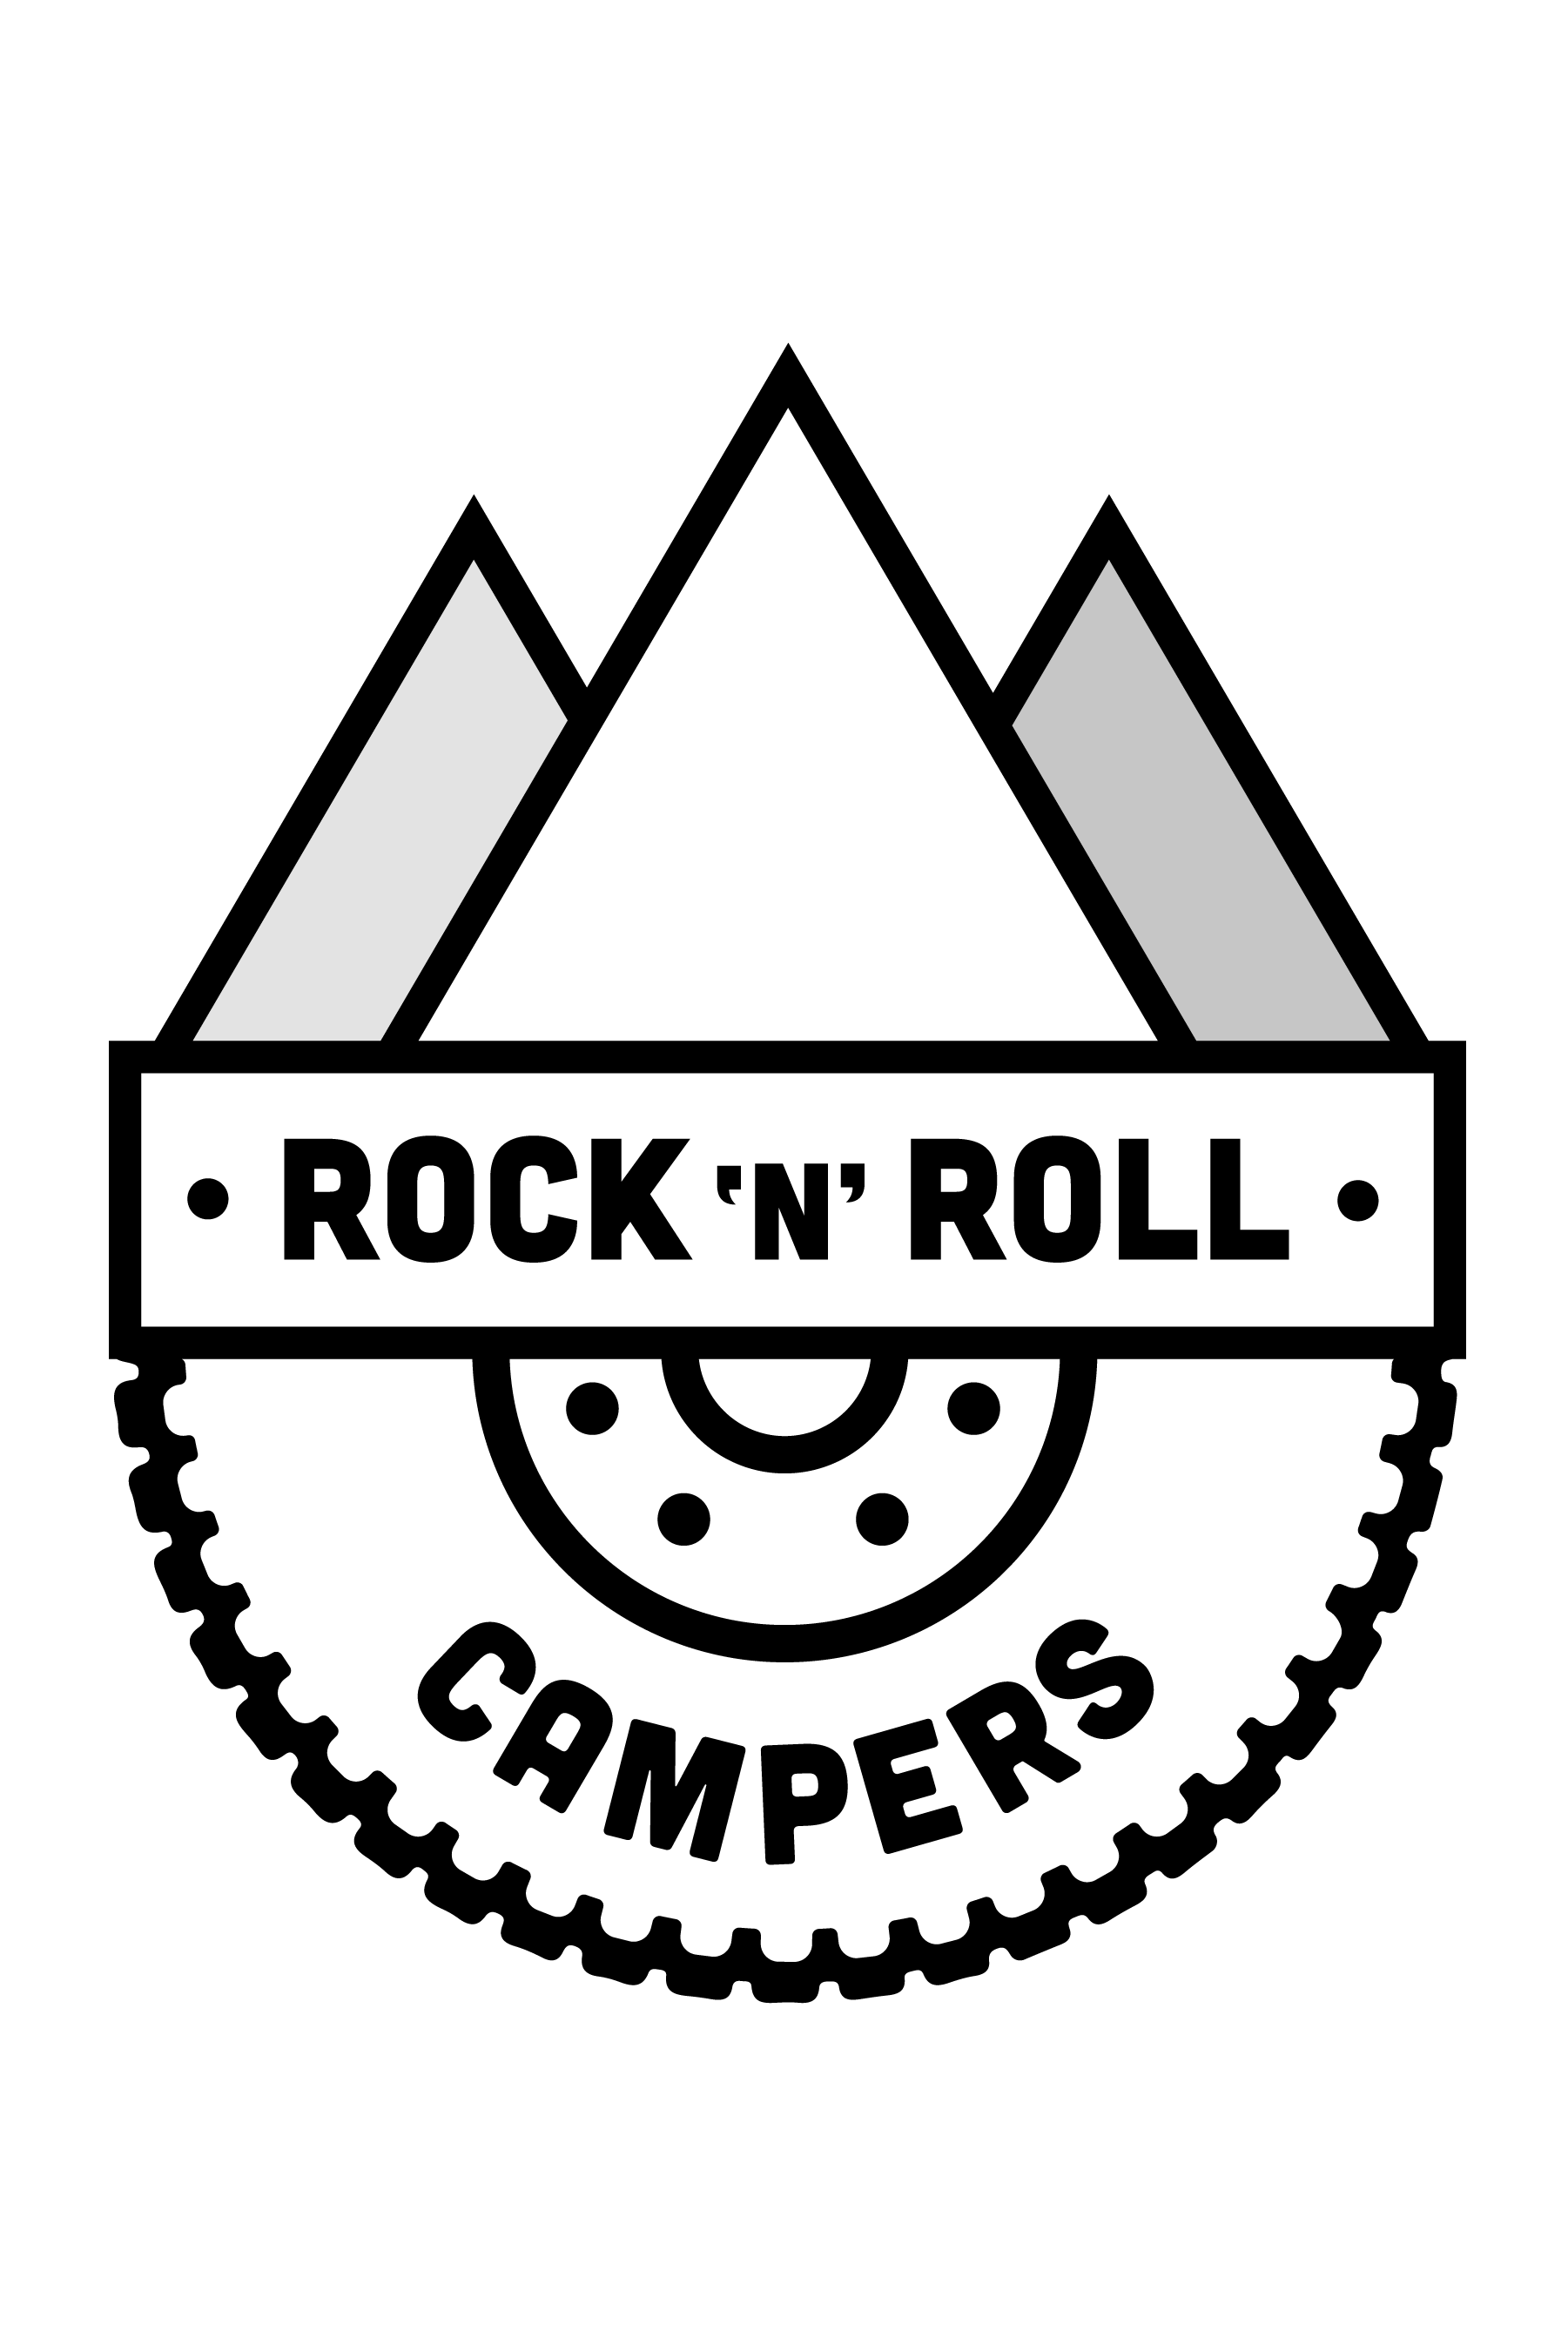 Rock 'n' Roll Campers